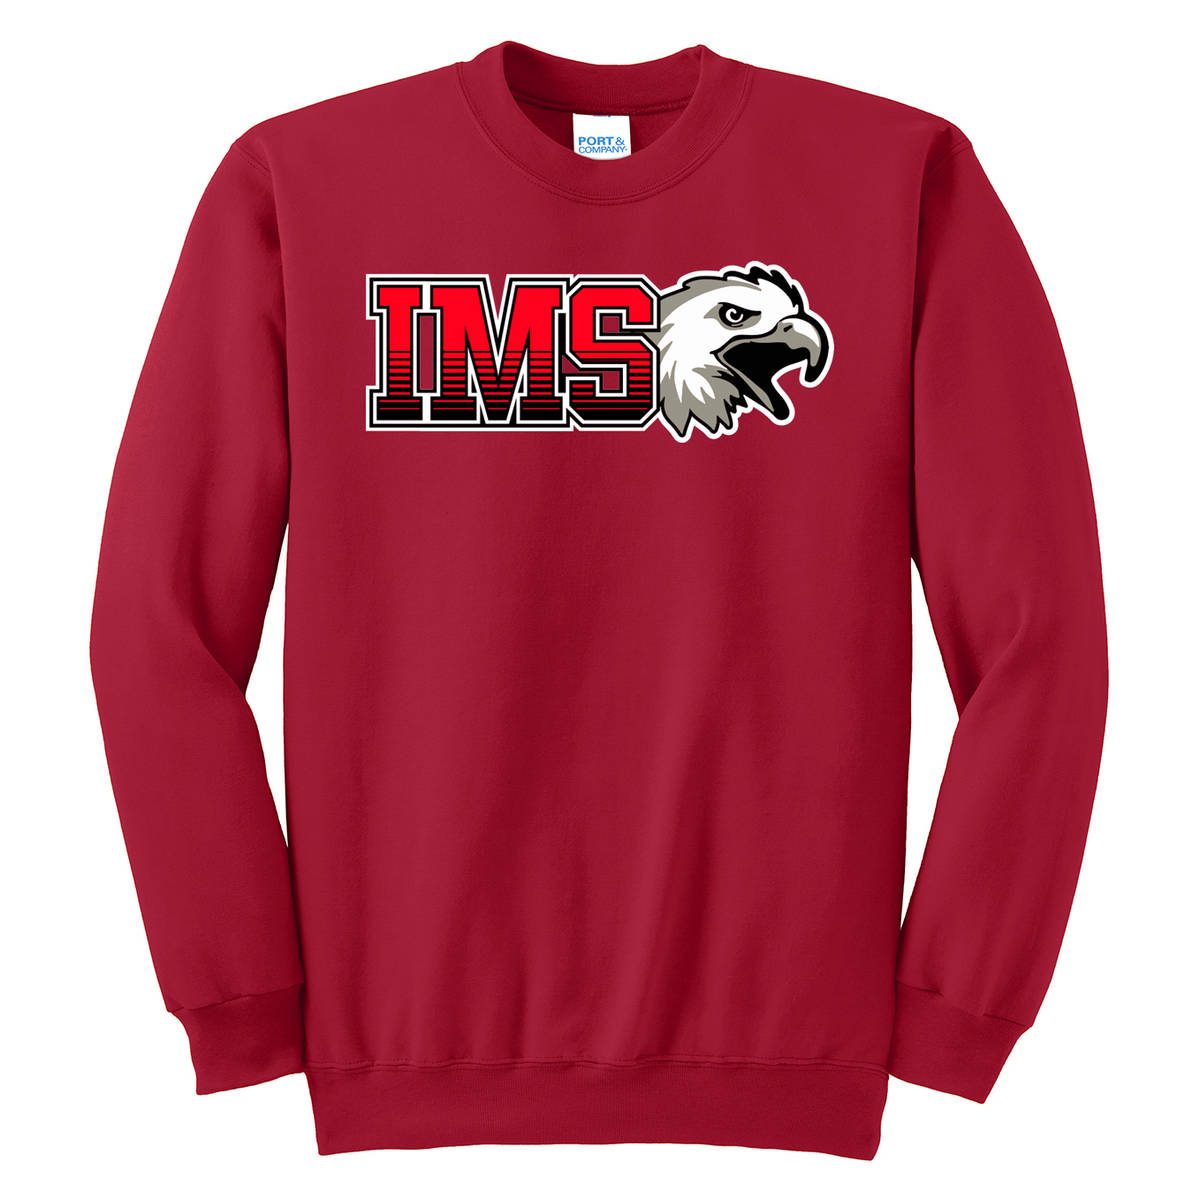 IMS Lacrosse Crew Neck Sweater